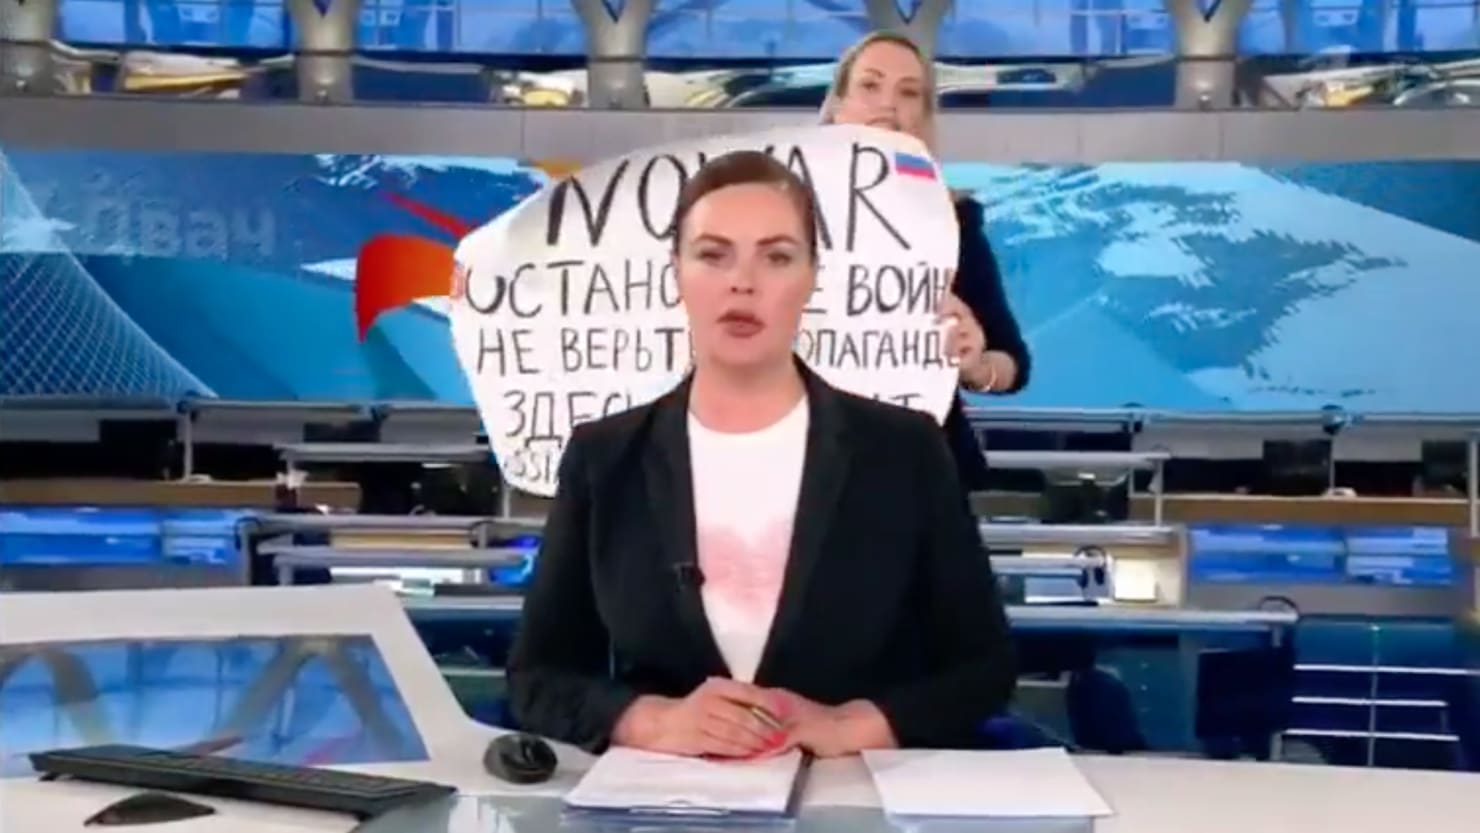 Un valiente manifestante interrumpe la emisión de la televisión estatal rusa con un mensaje contra la guerra